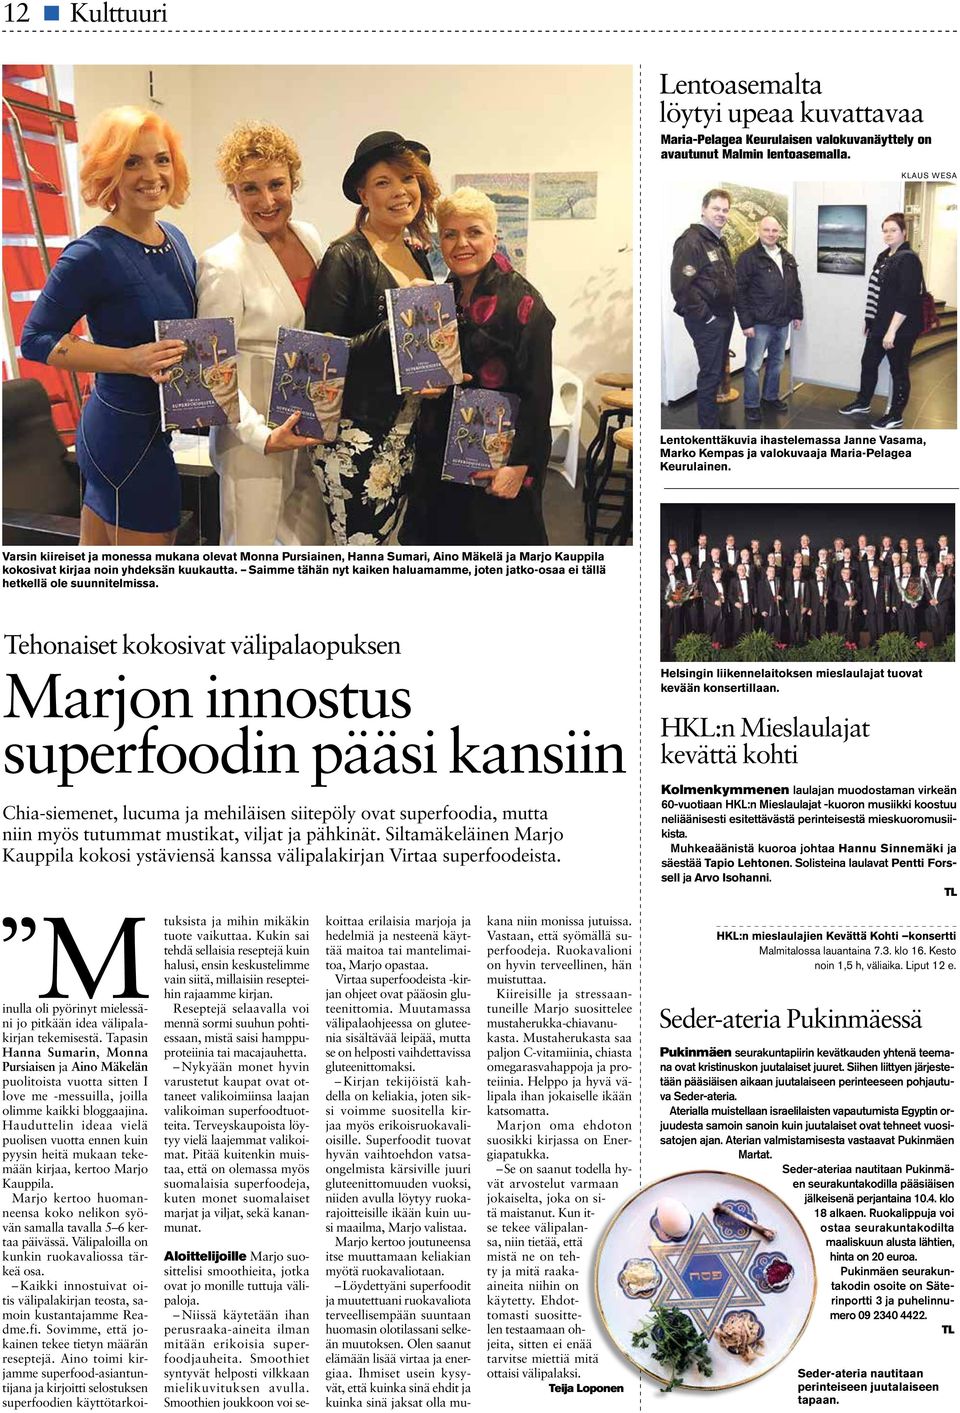 Varsin kiireiset ja monessa mukana olevat Monna Pursiainen, Hanna Sumari, Aino Mäkelä ja Marjo Kauppila kokosivat kirjaa noin yhdeksän kuukautta.